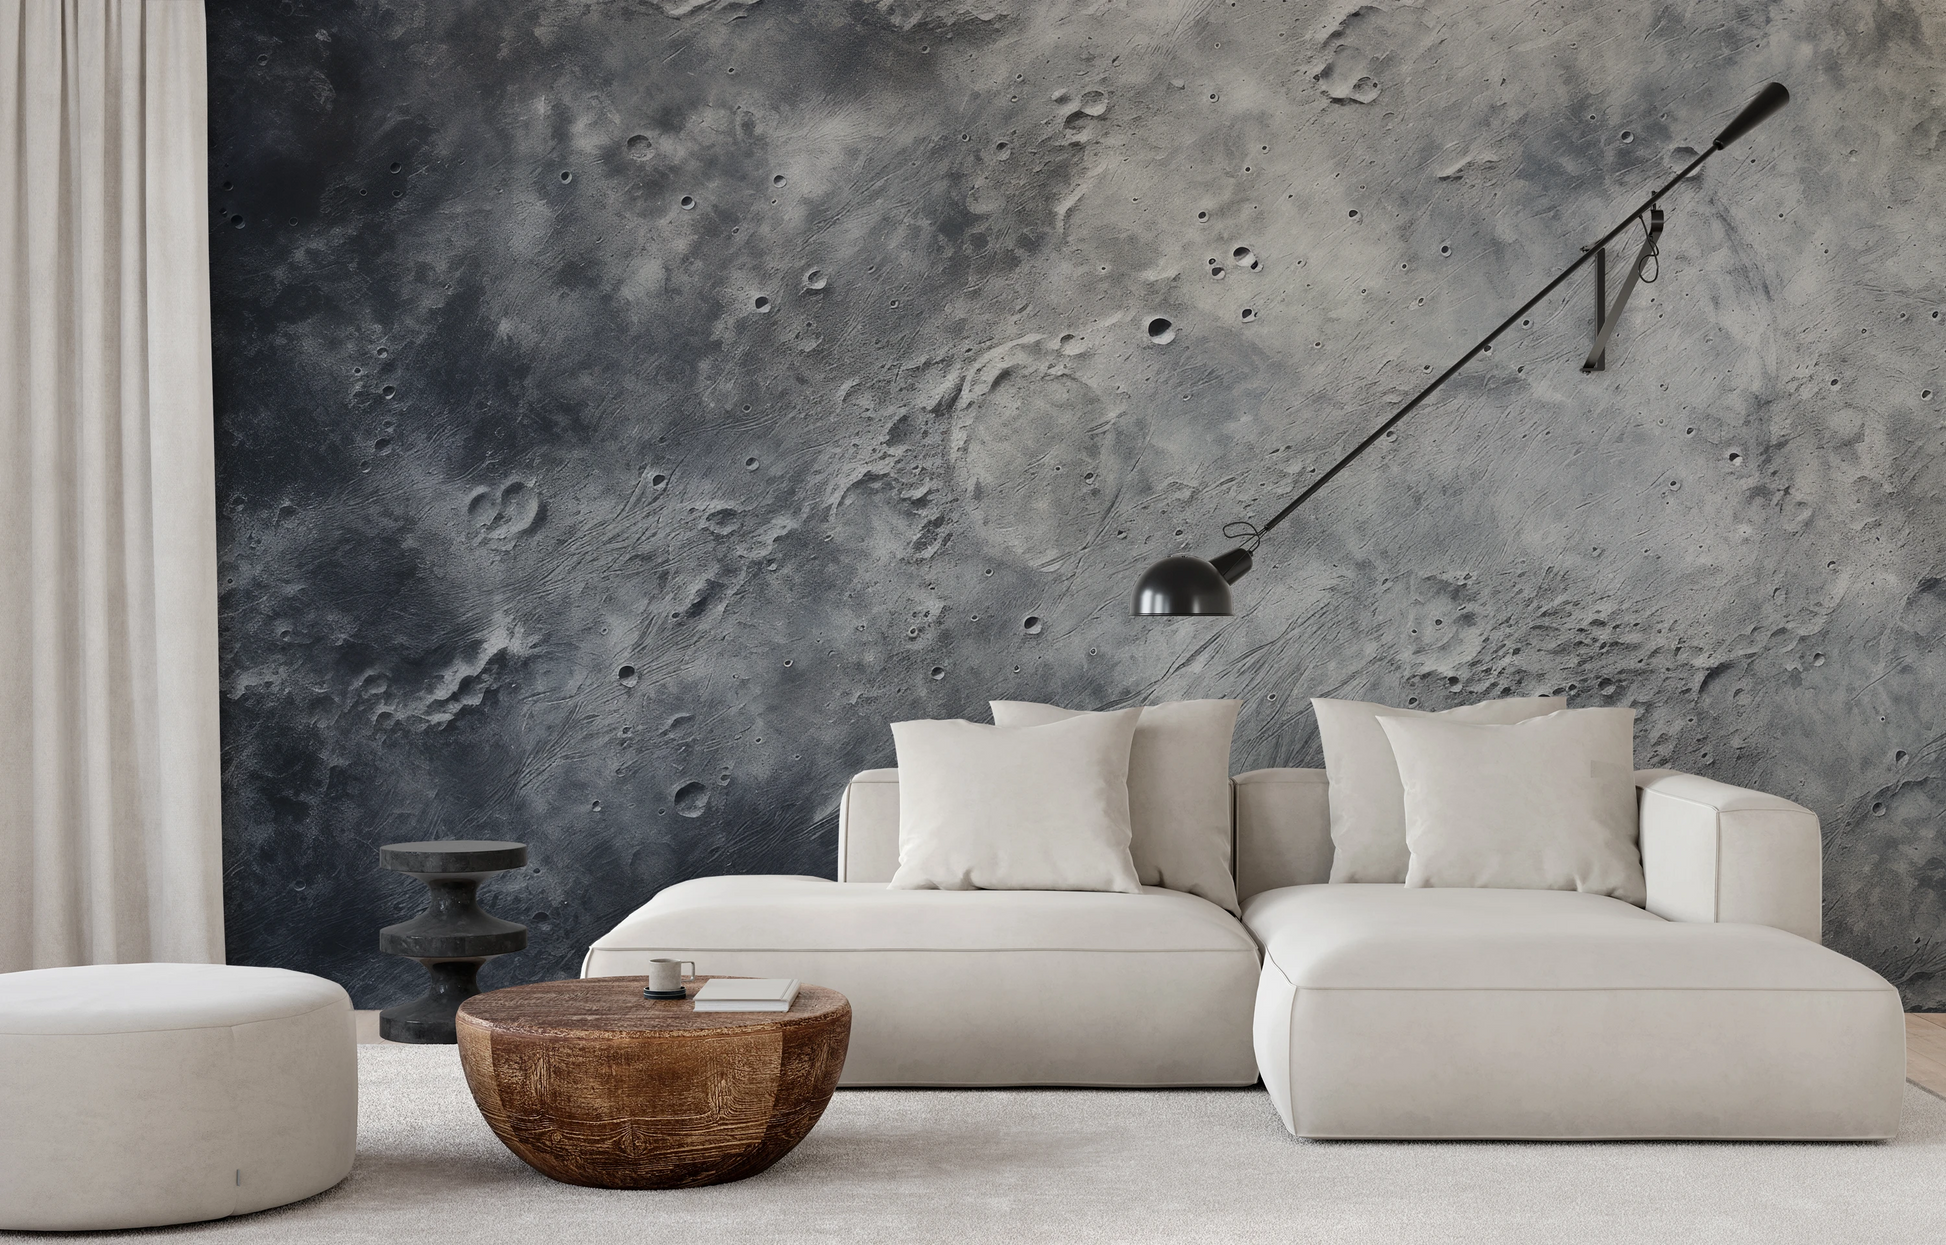 Wzór fototapety malowanej o nazwie Moonlight Sonata pokazanej w aranżacji wnętrza.